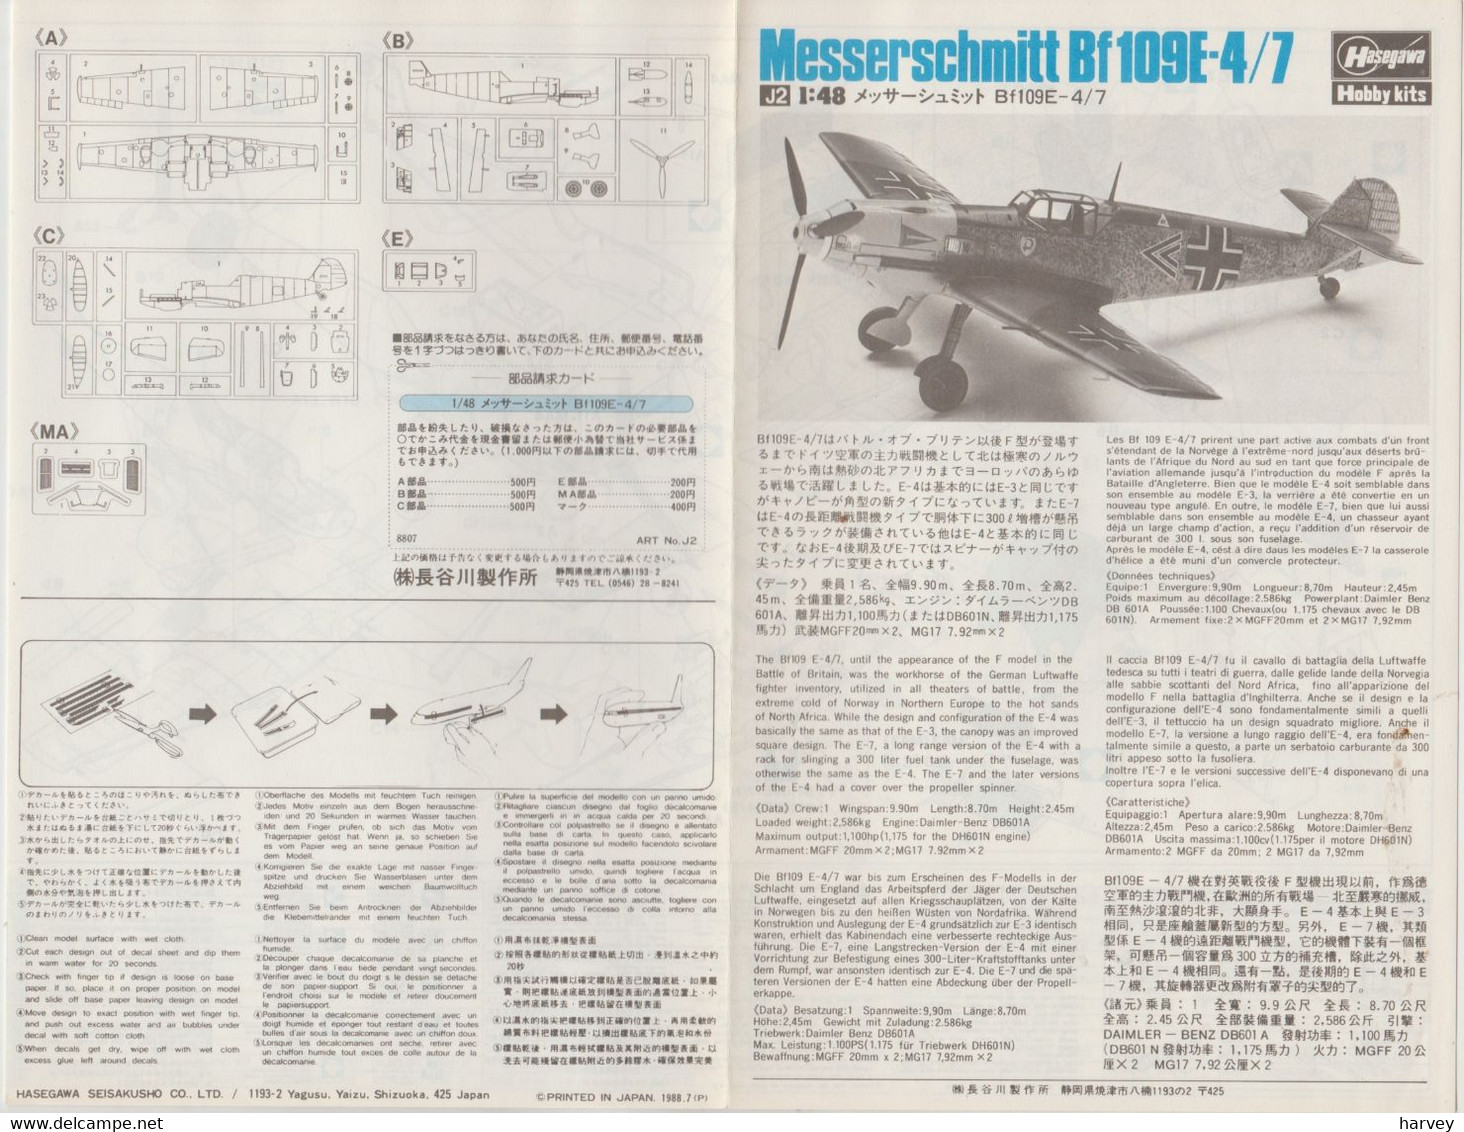 Hasegawa 1/48e Messerschmitt 109 E-4/7 - Flugzeuge